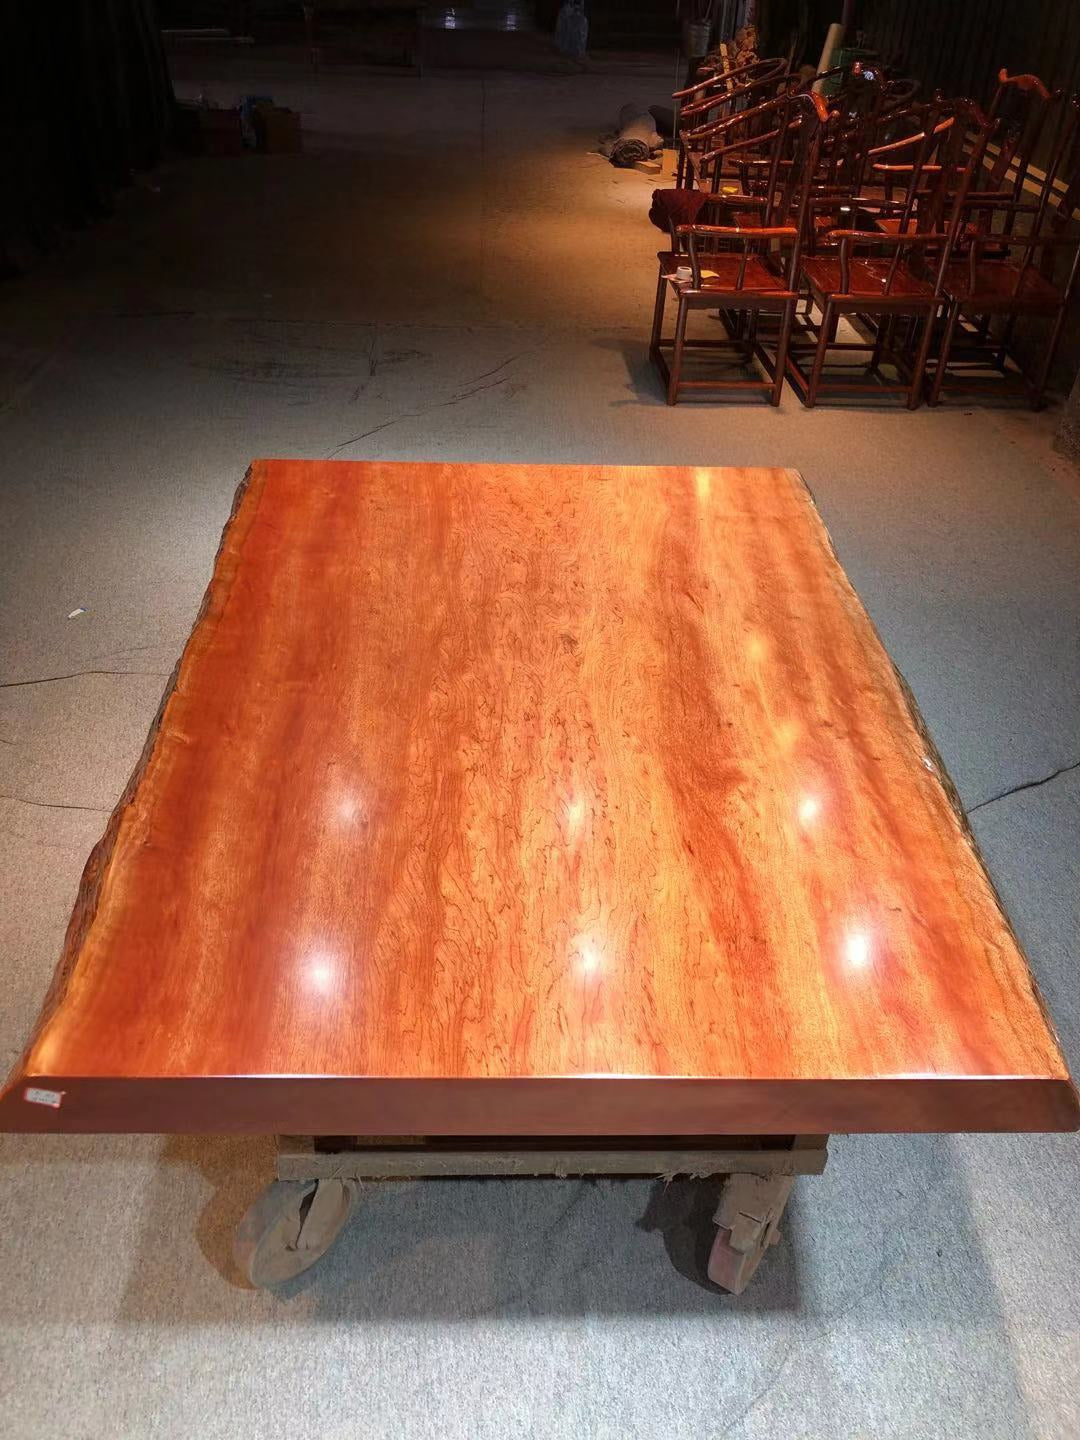 木製スラブファームテーブル、ビンタンゴール木製スラブテーブル、スラブガーデンファニチャー